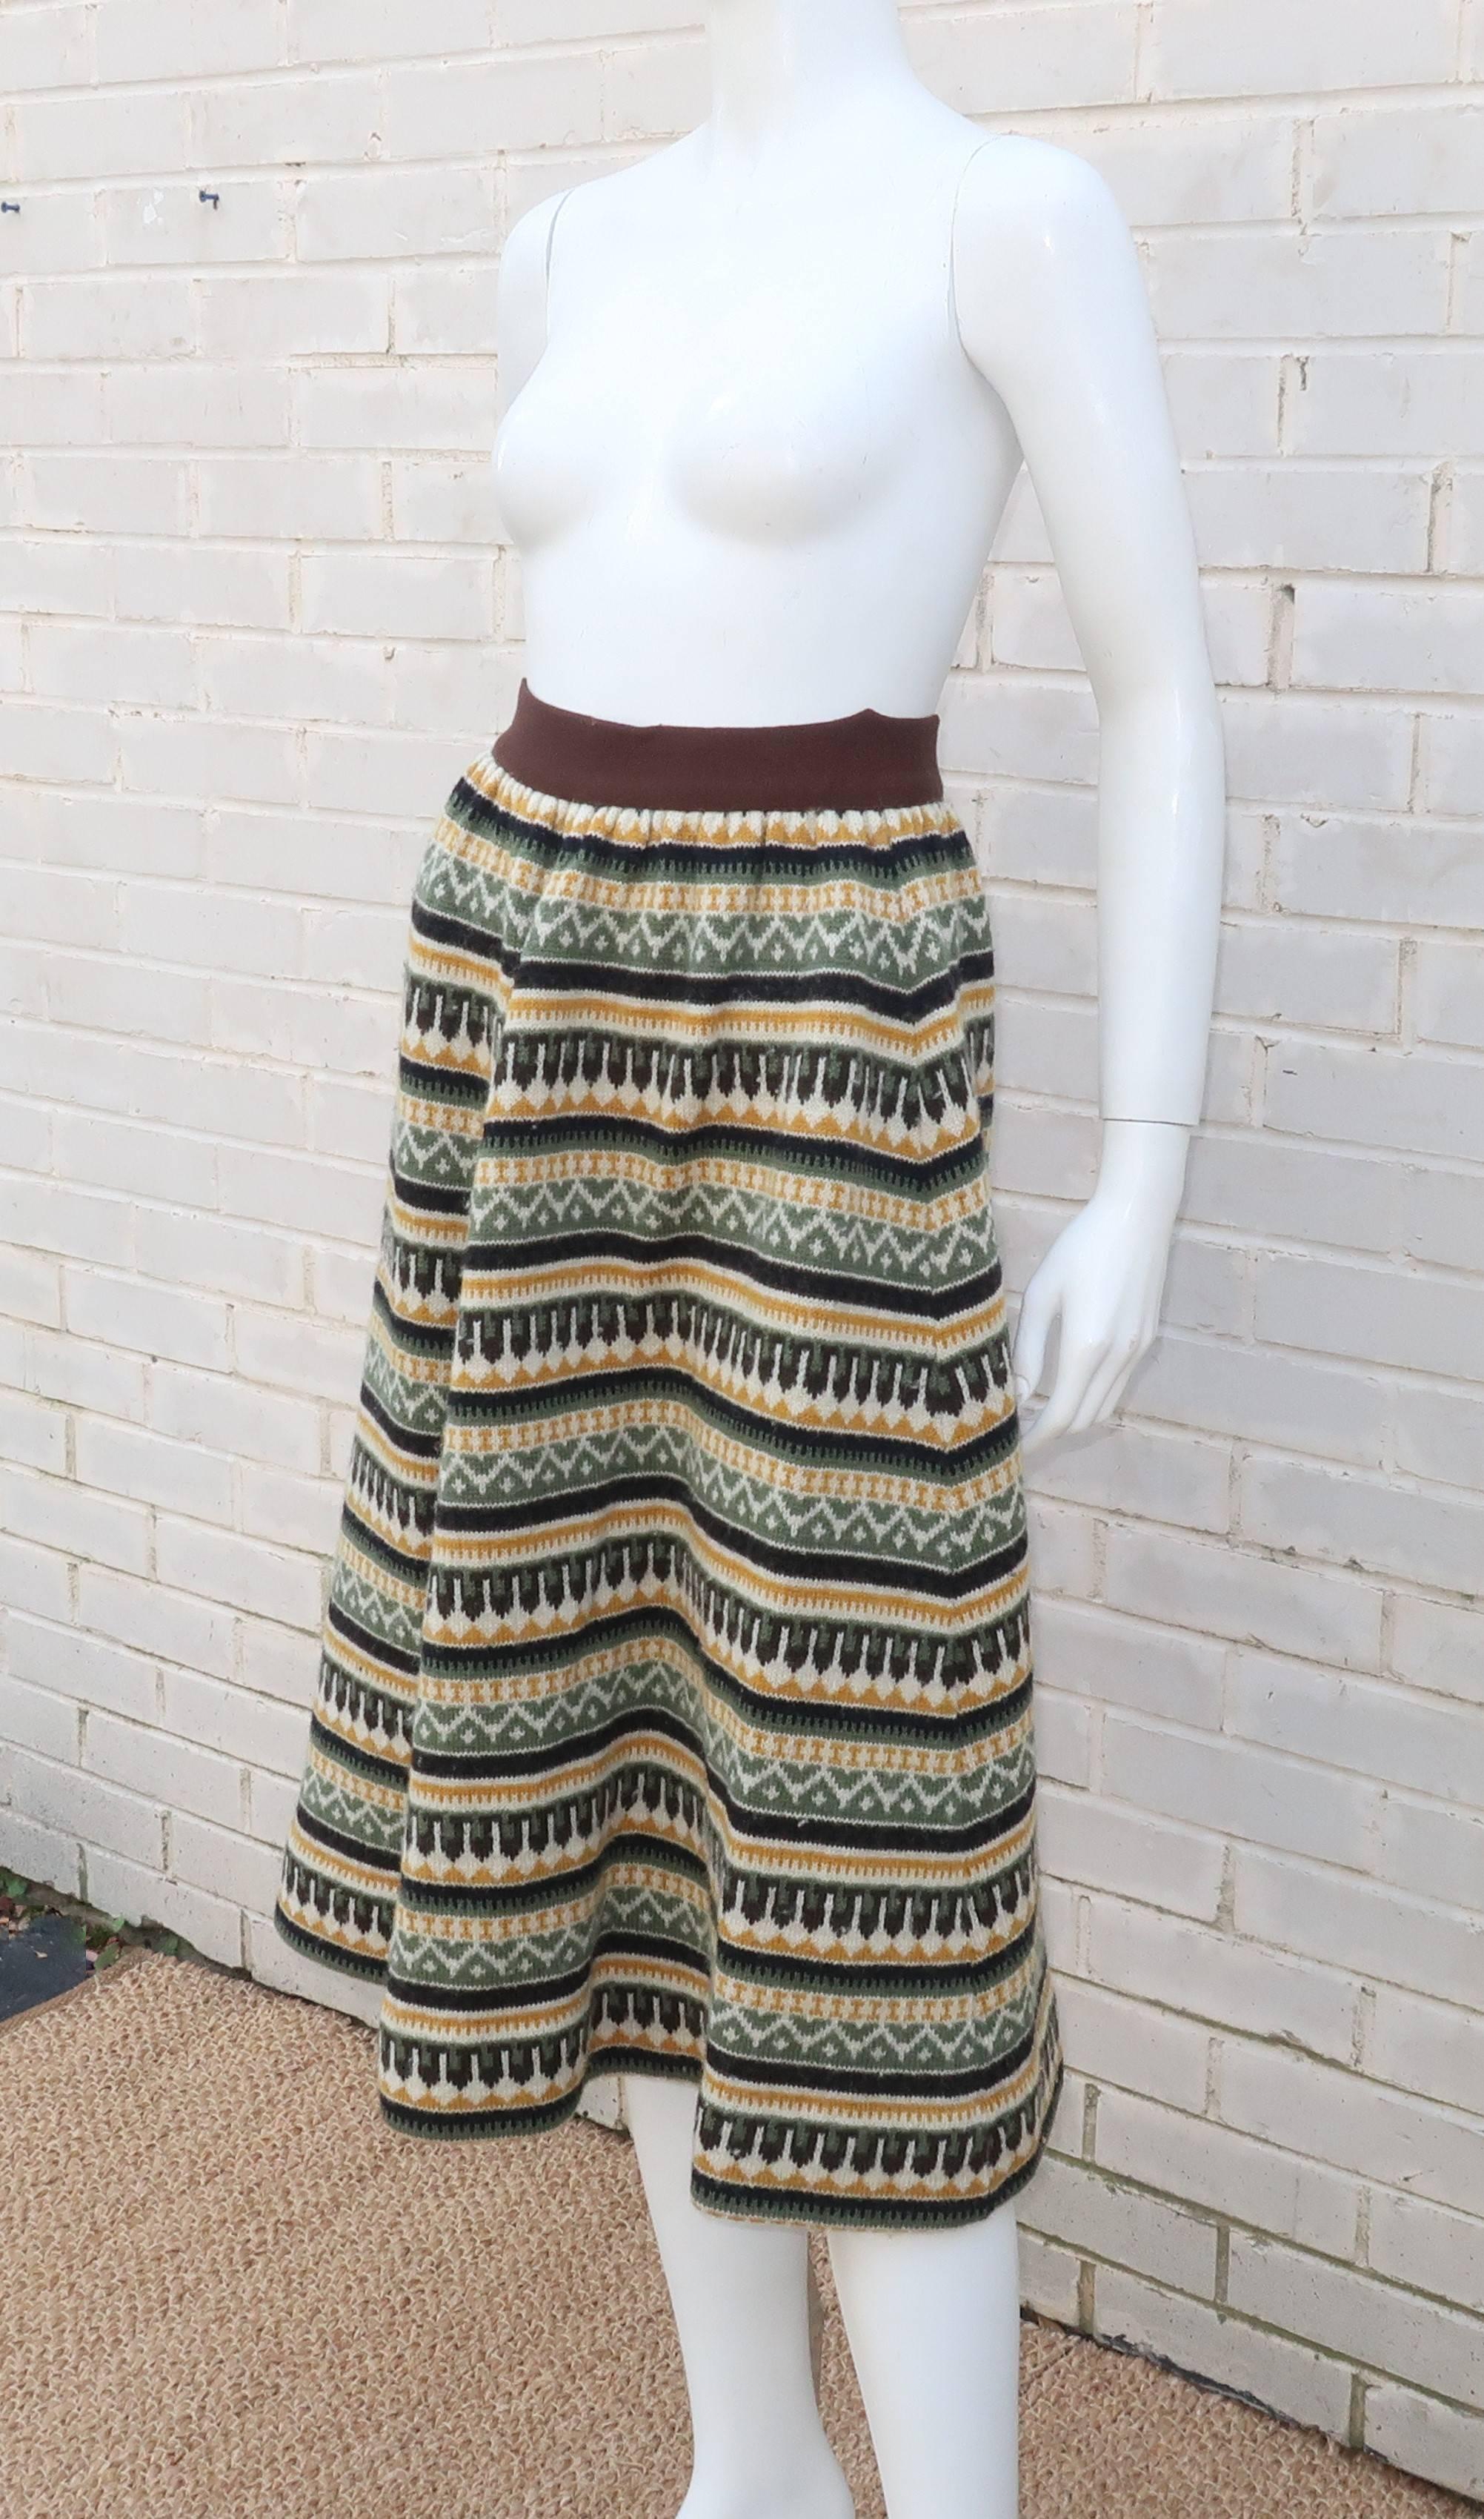 wool knit skirt